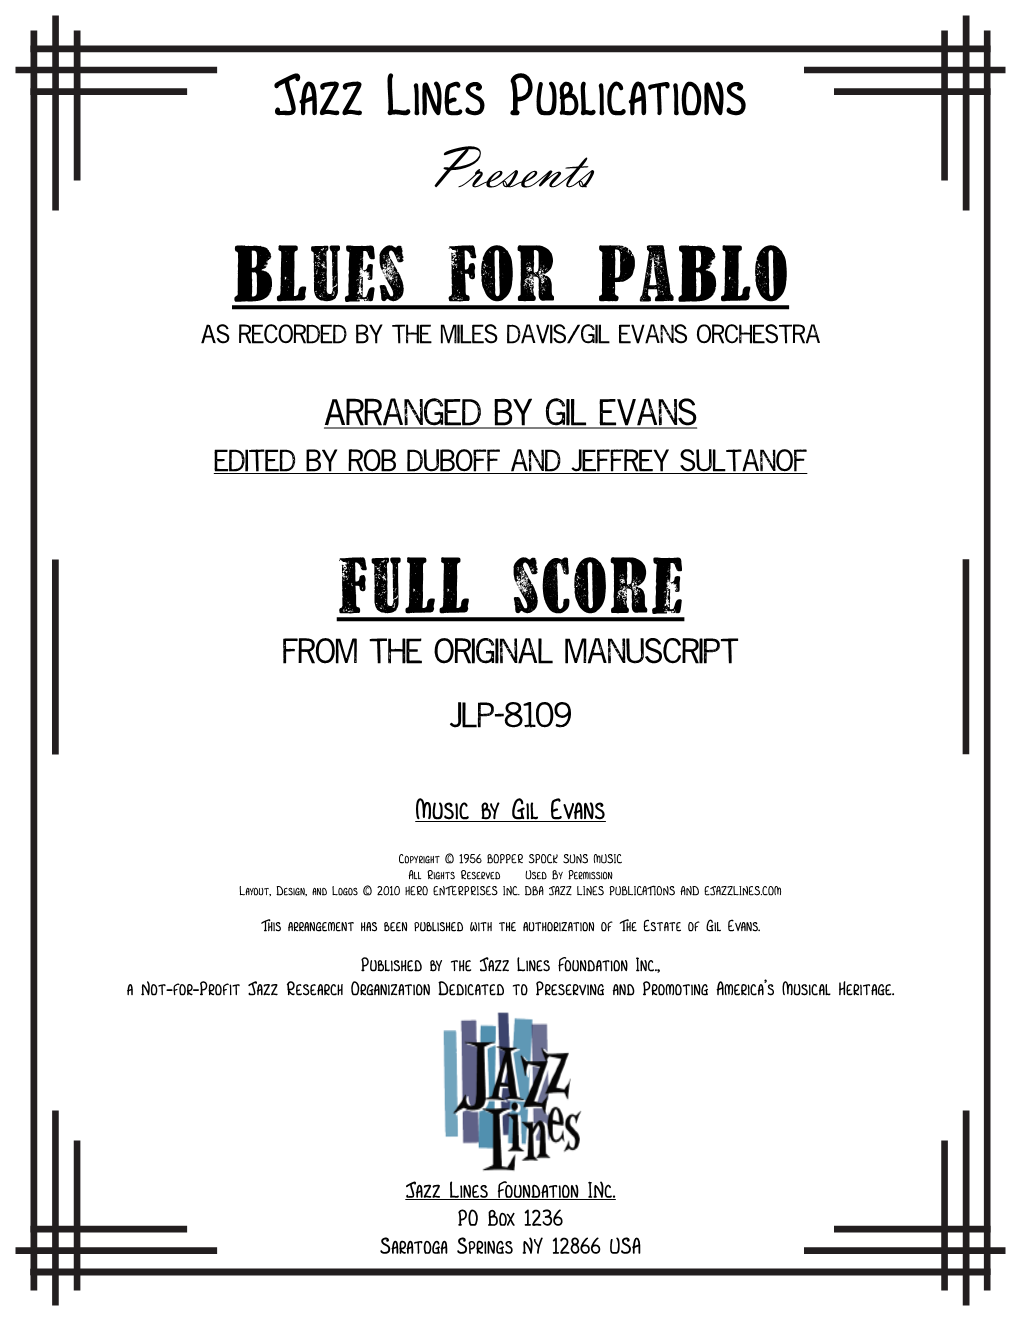 Blues for Pablo